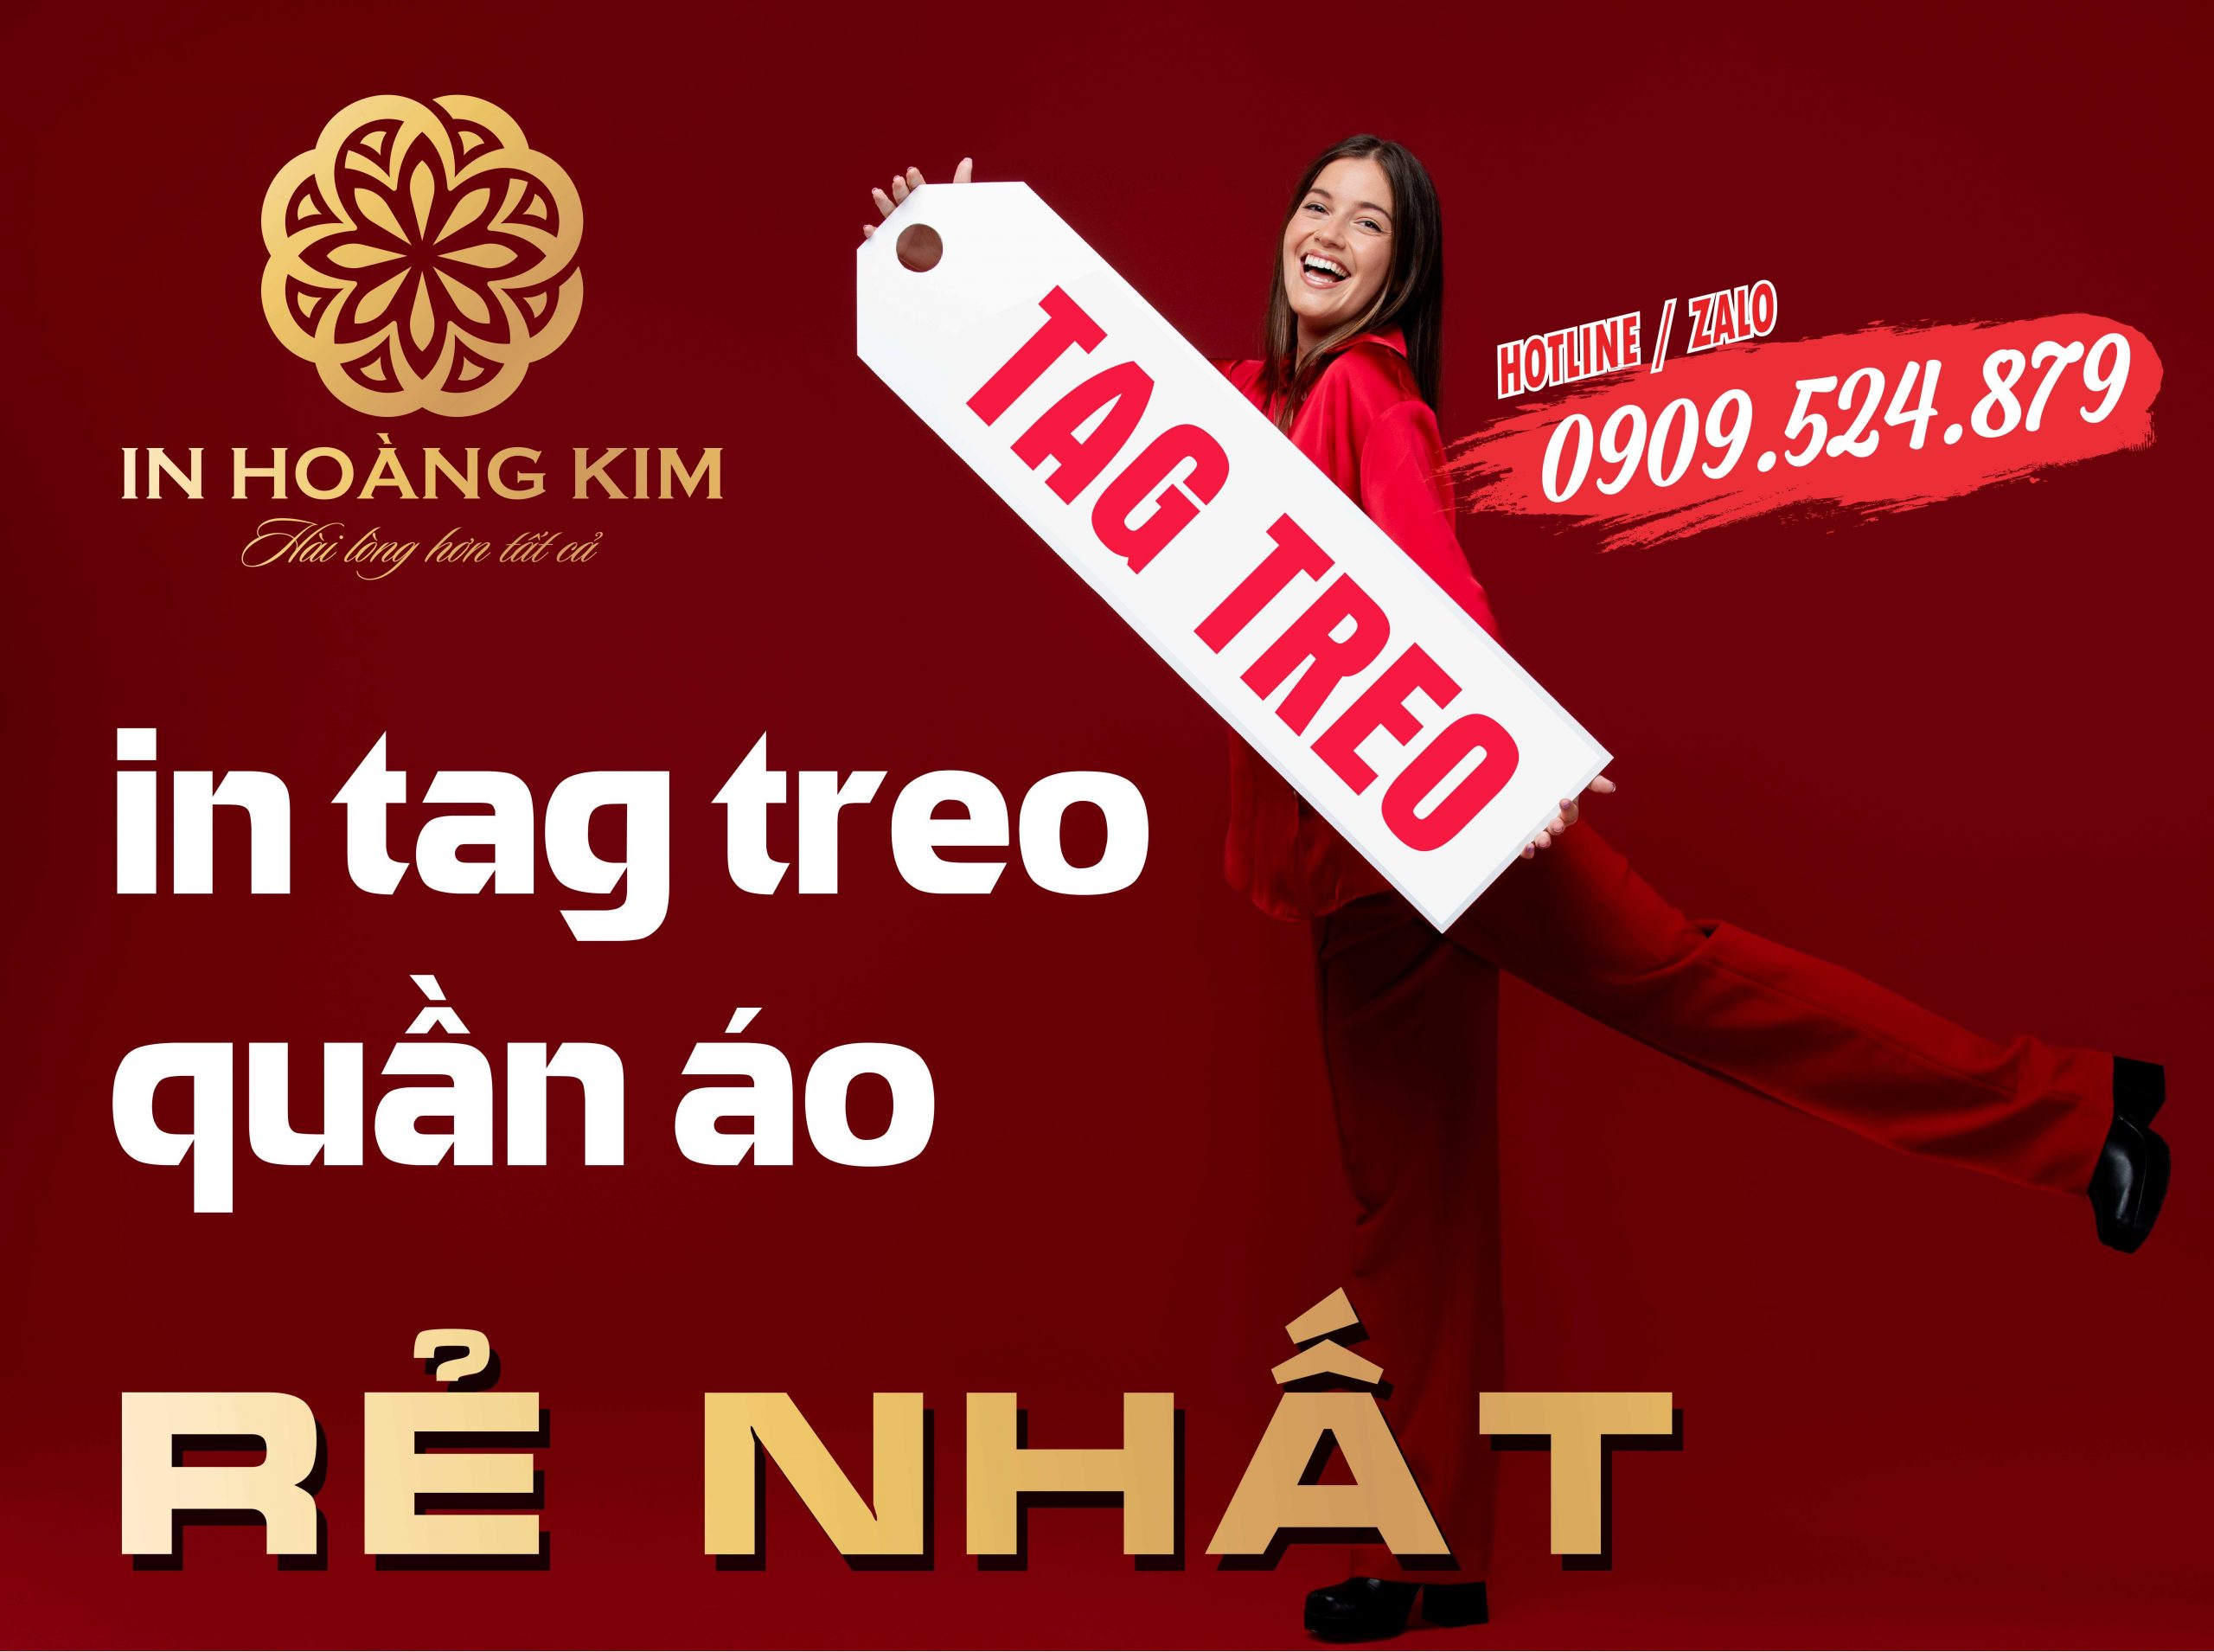 In Hoàng Kim tự hào là dịch vụ in Tag treo quần áo giá rẻ nhất thị trường